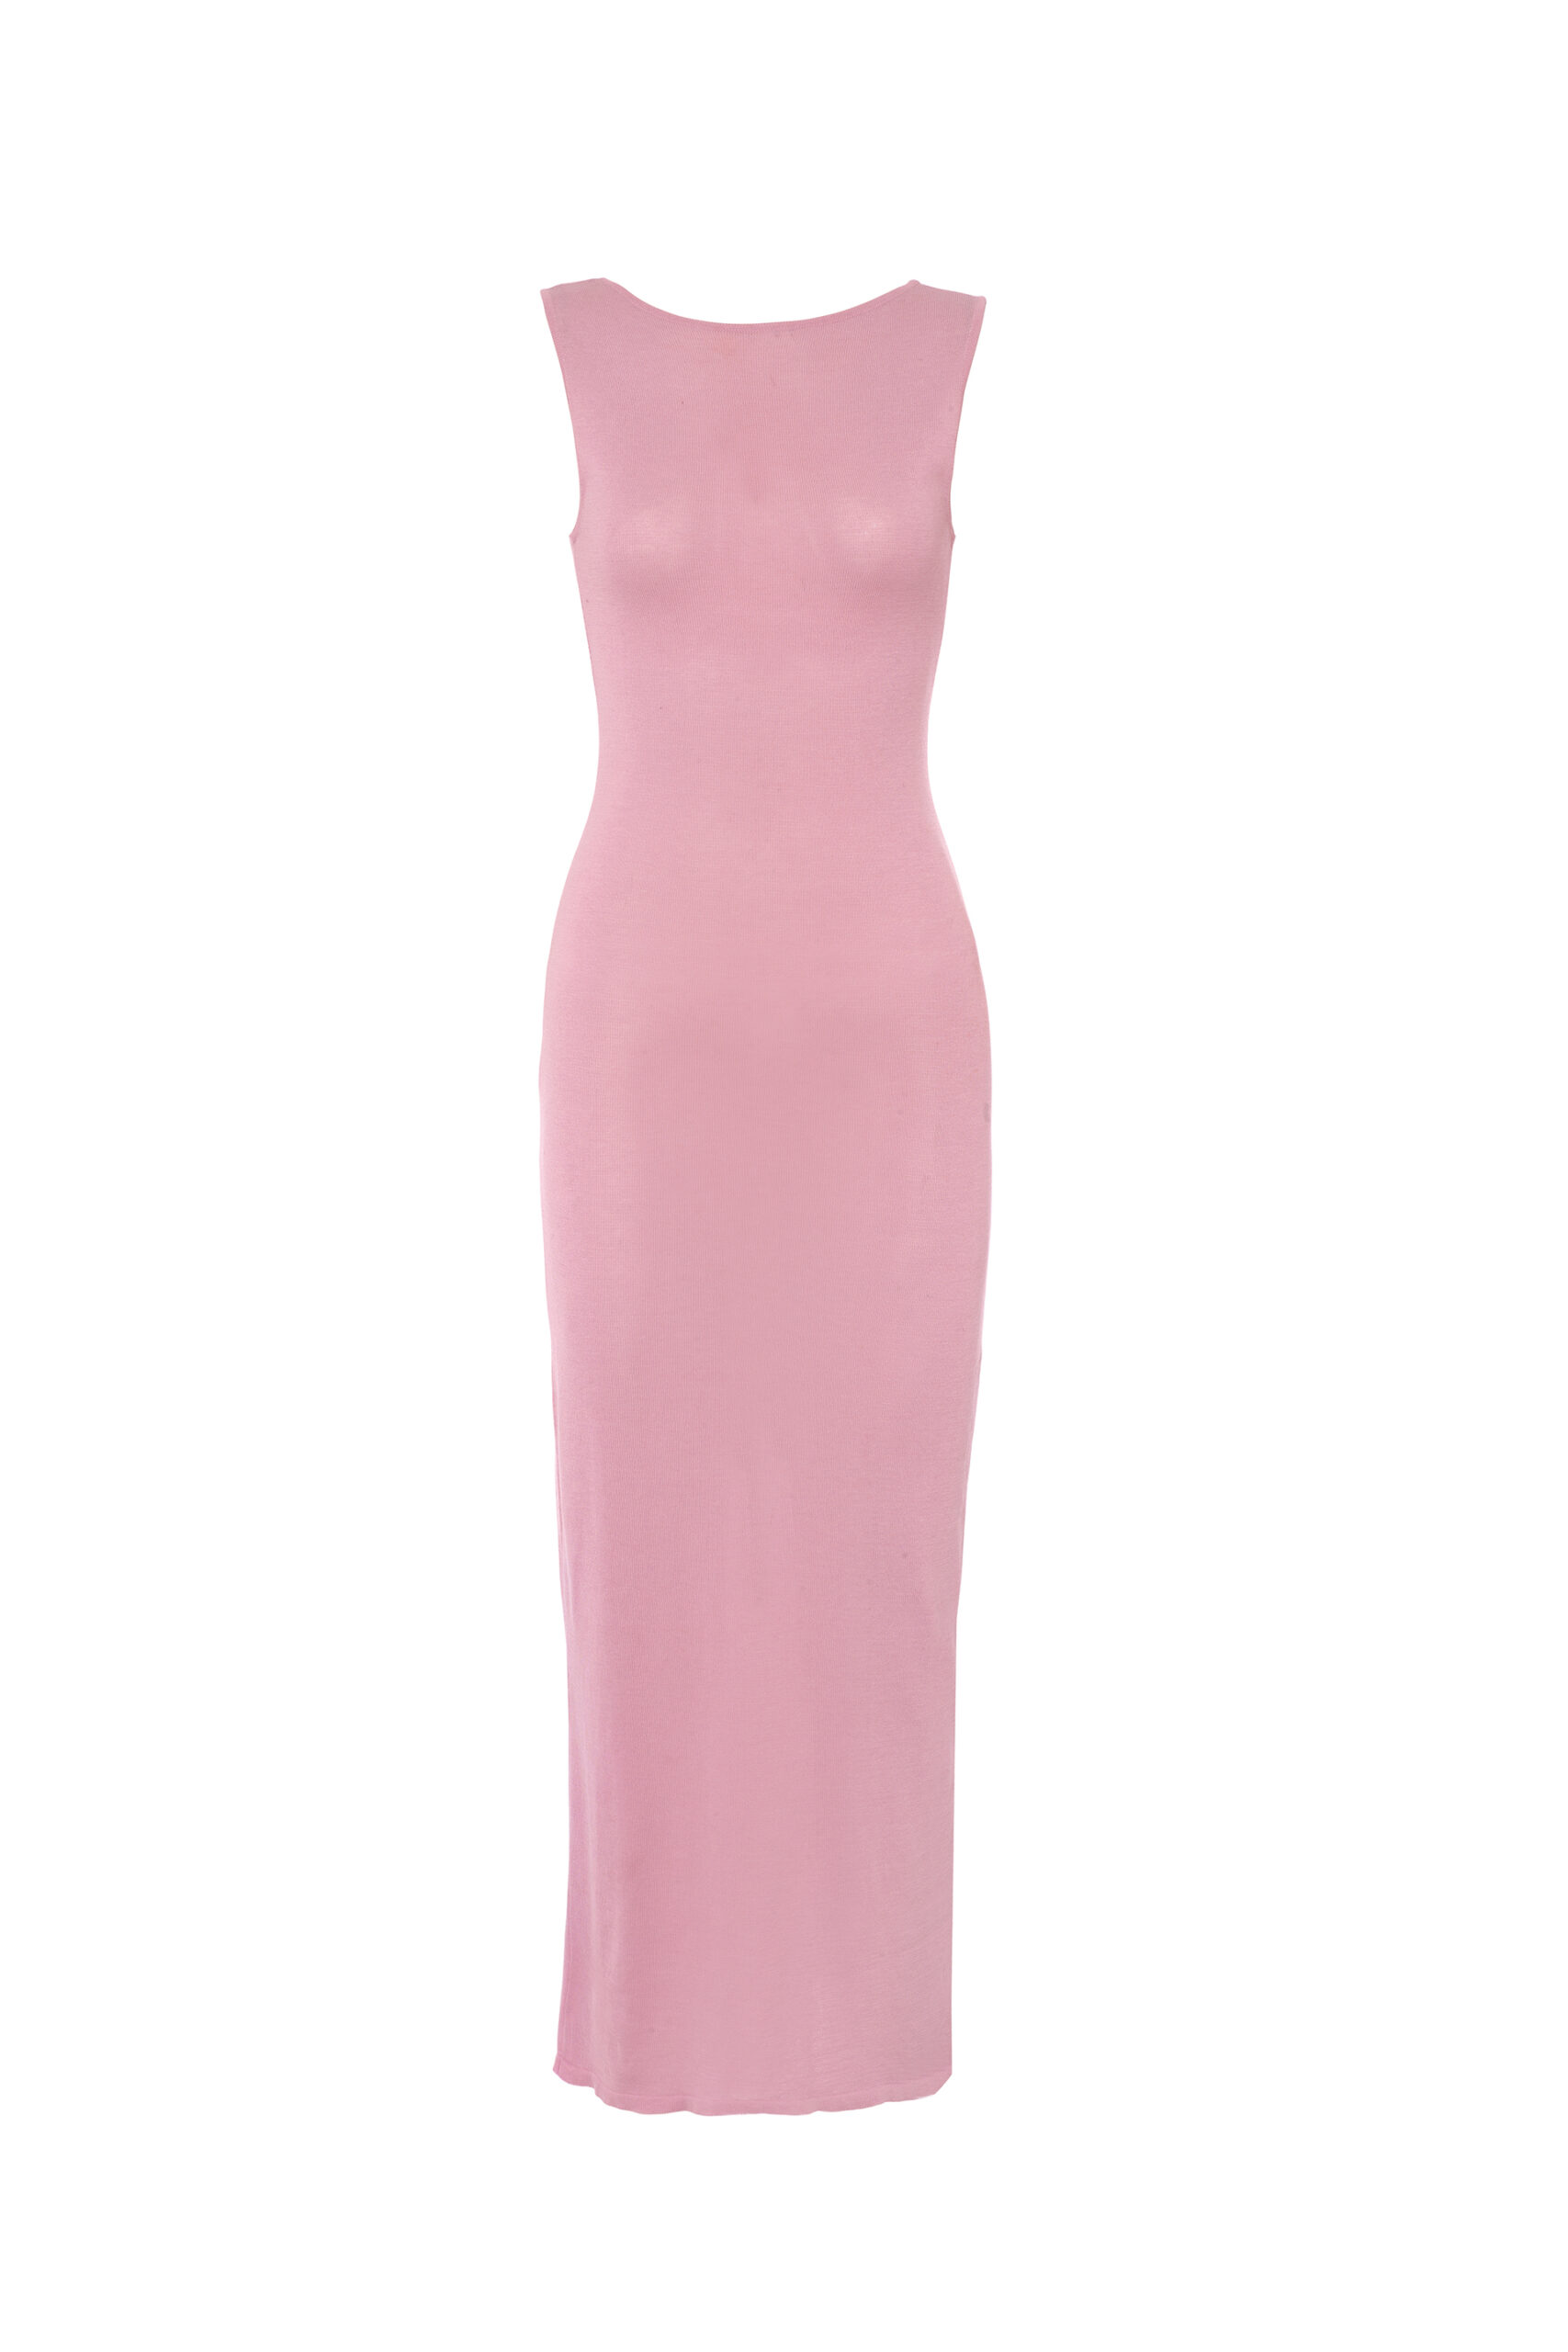 TL180 Knitwear Amore Dress Silk Rosa 01